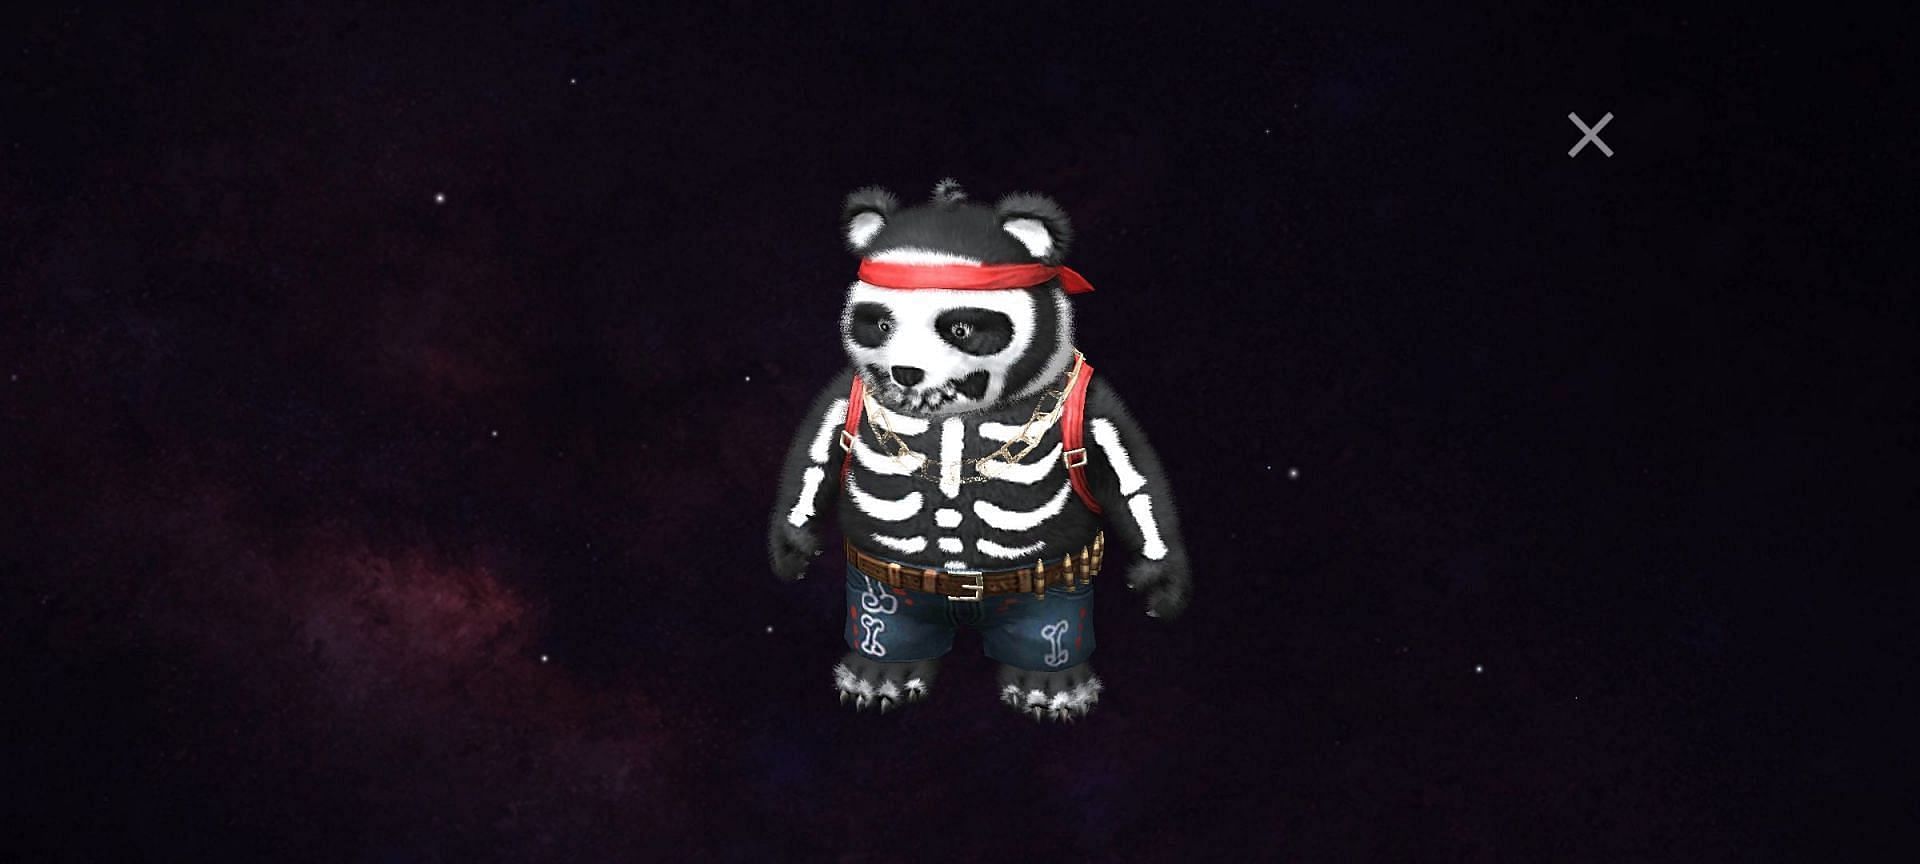 Skull Panda skin in Free Fire (Image via Garena)